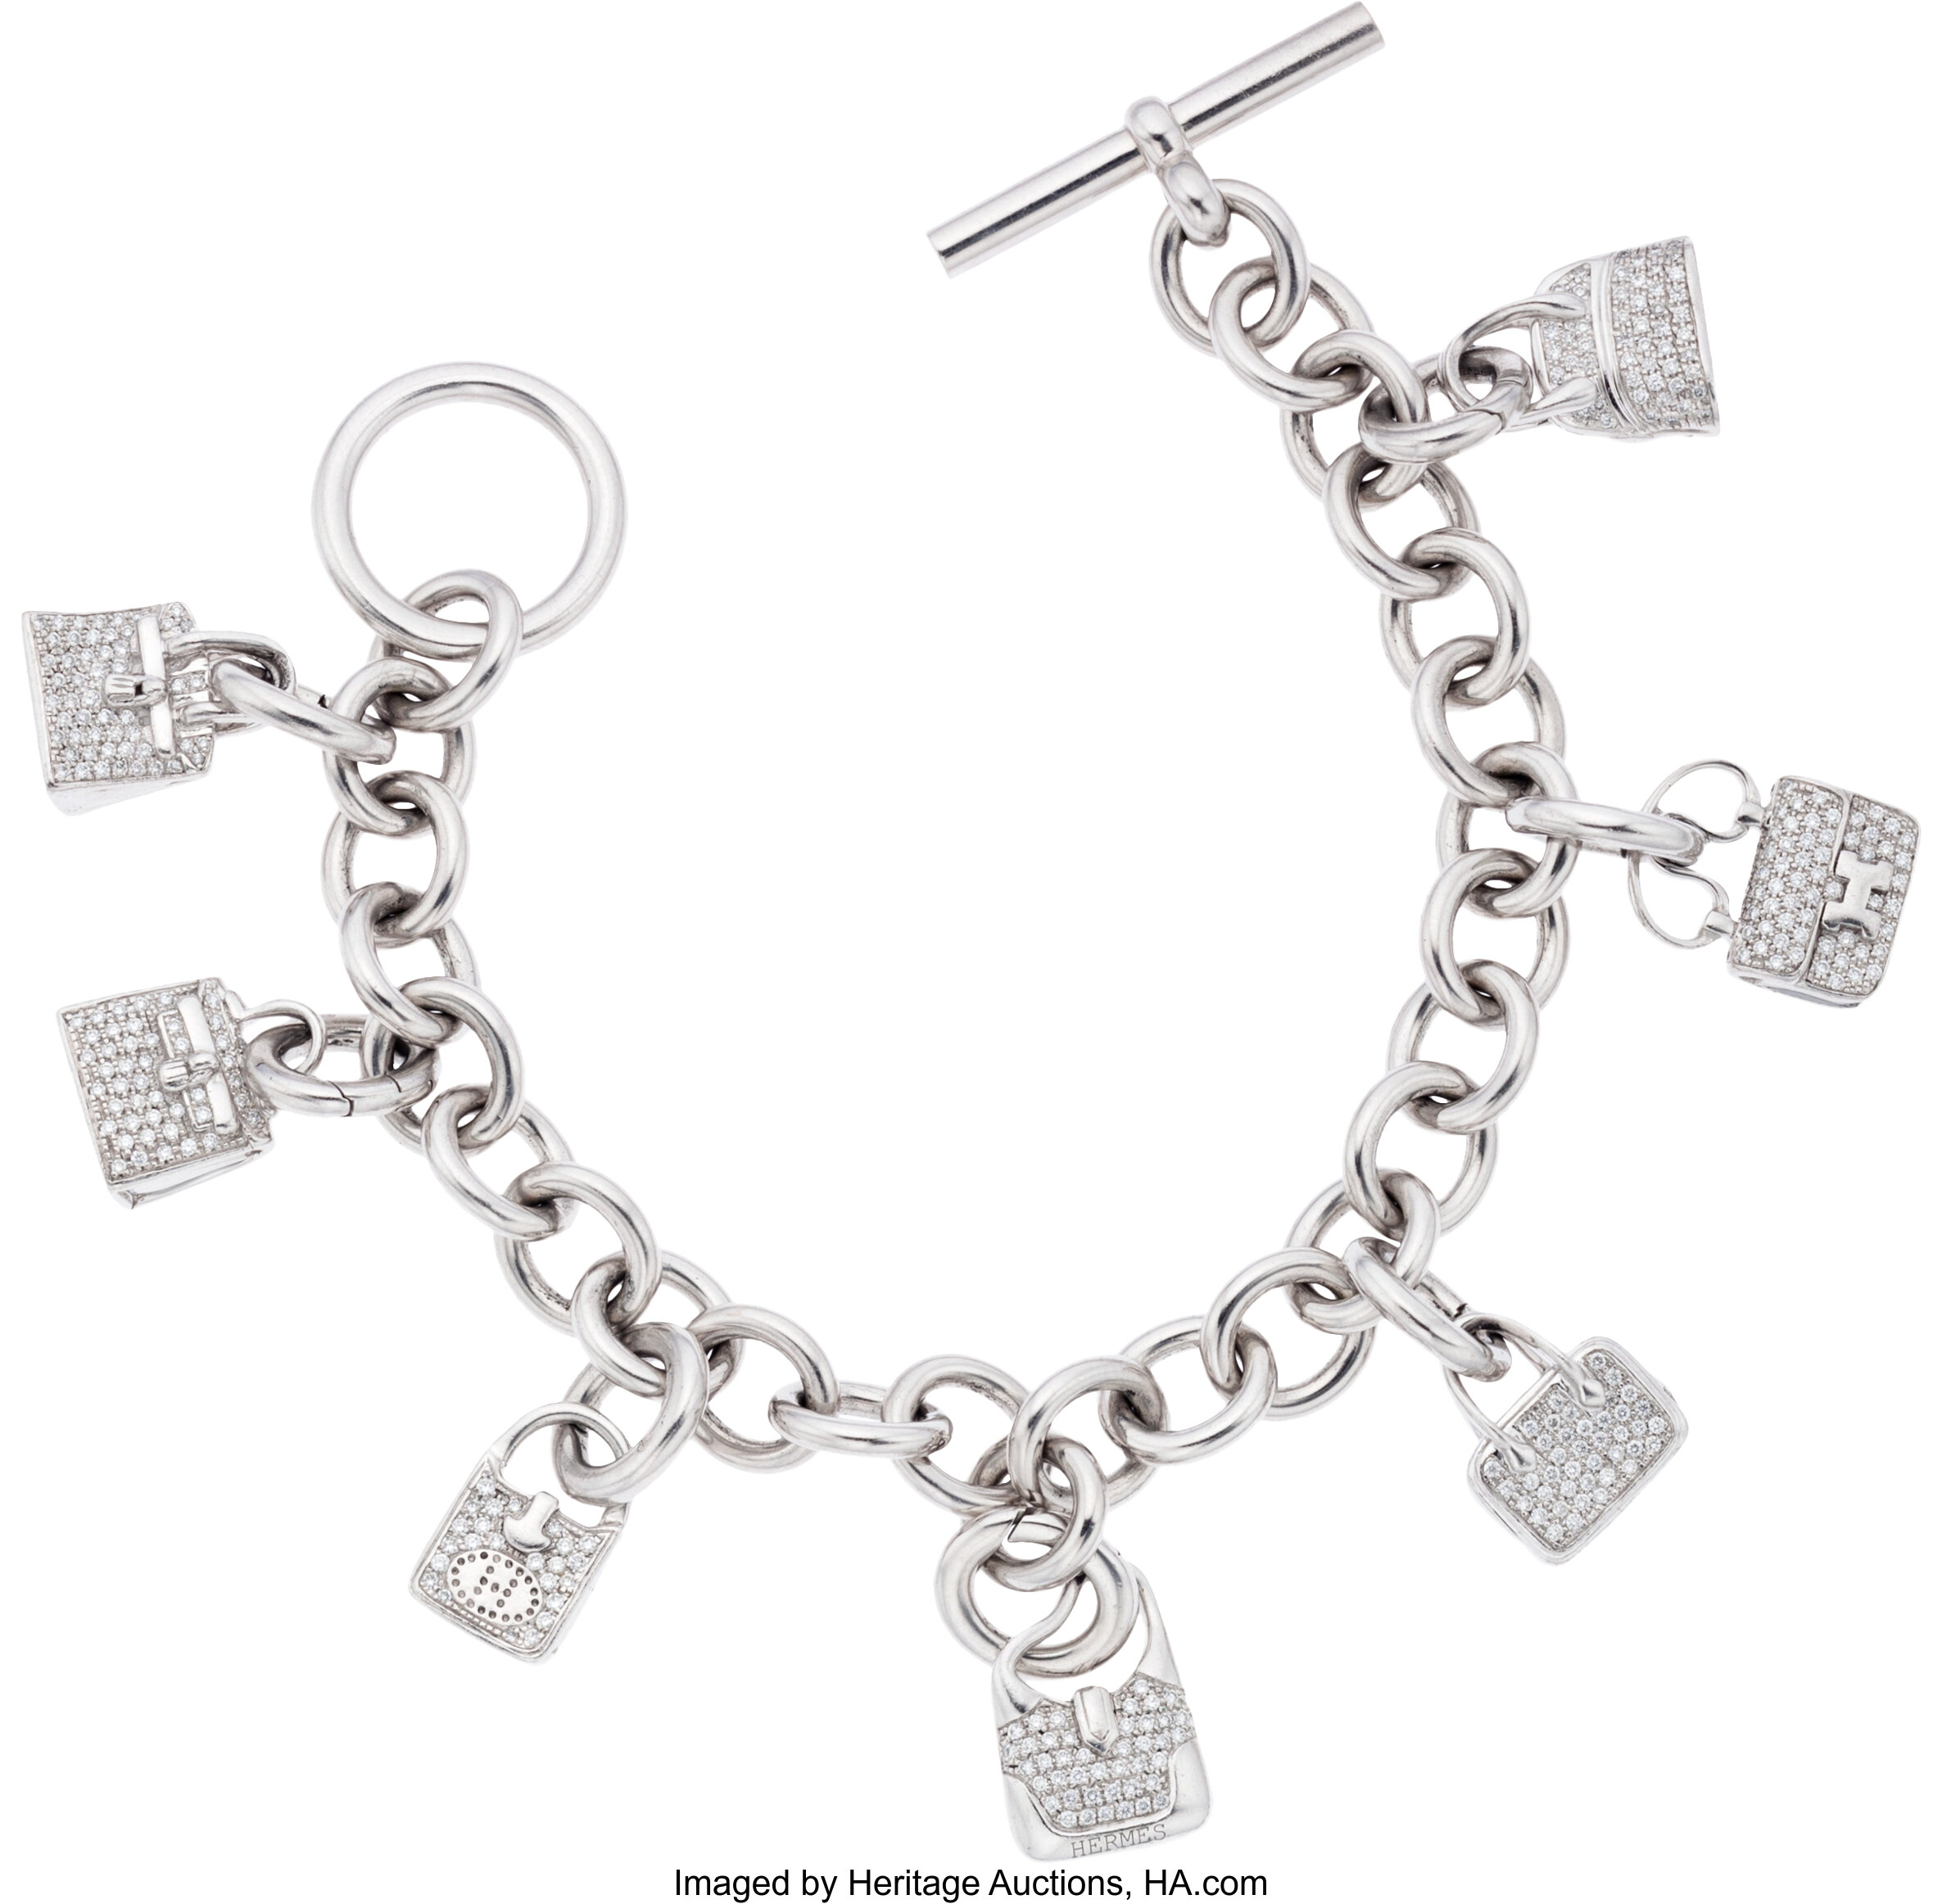 HERMES HERMES Amulette Birkin Bracelet diamond K18WG White Gold Used Women